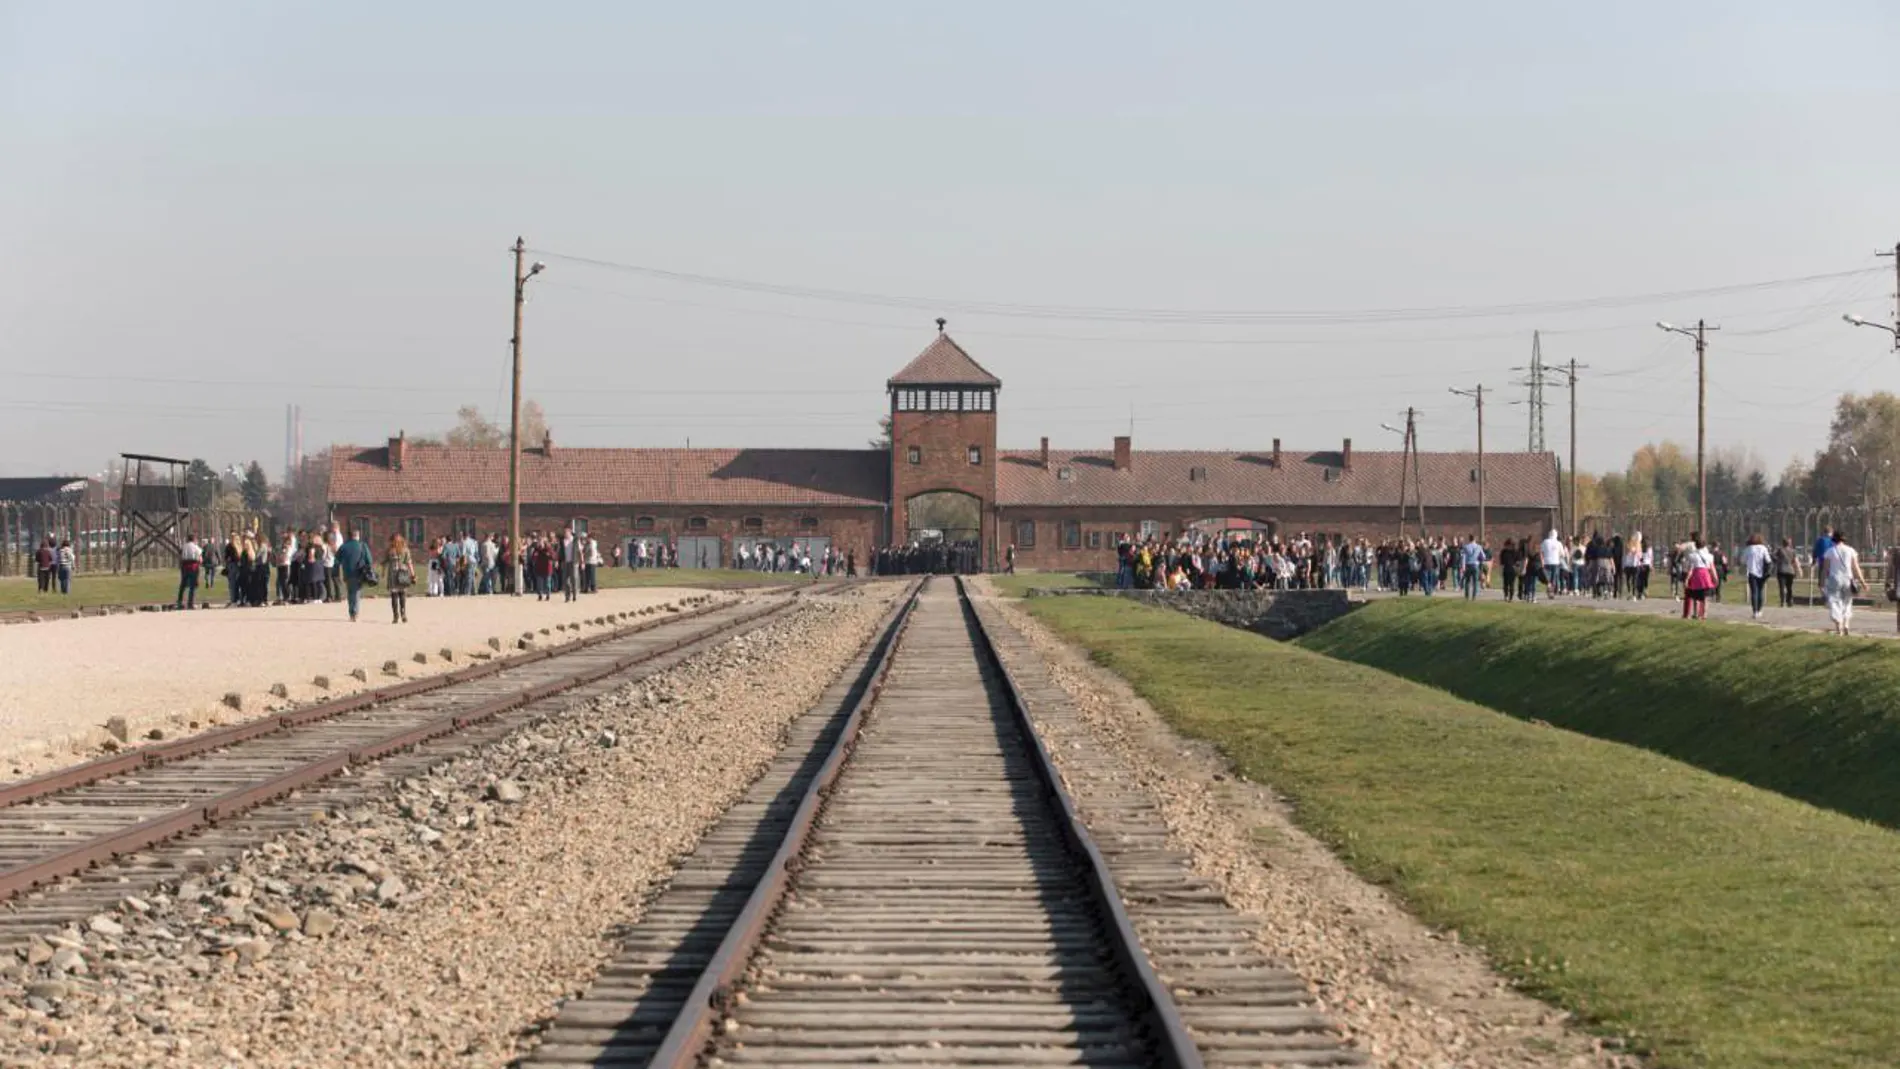 Cerca de Auschwitz está Birkenau, un campo de exterminio a cuyos raíles llegaron miles de personas en tren, la mayoría judíos, y donde eran directamente gaseados